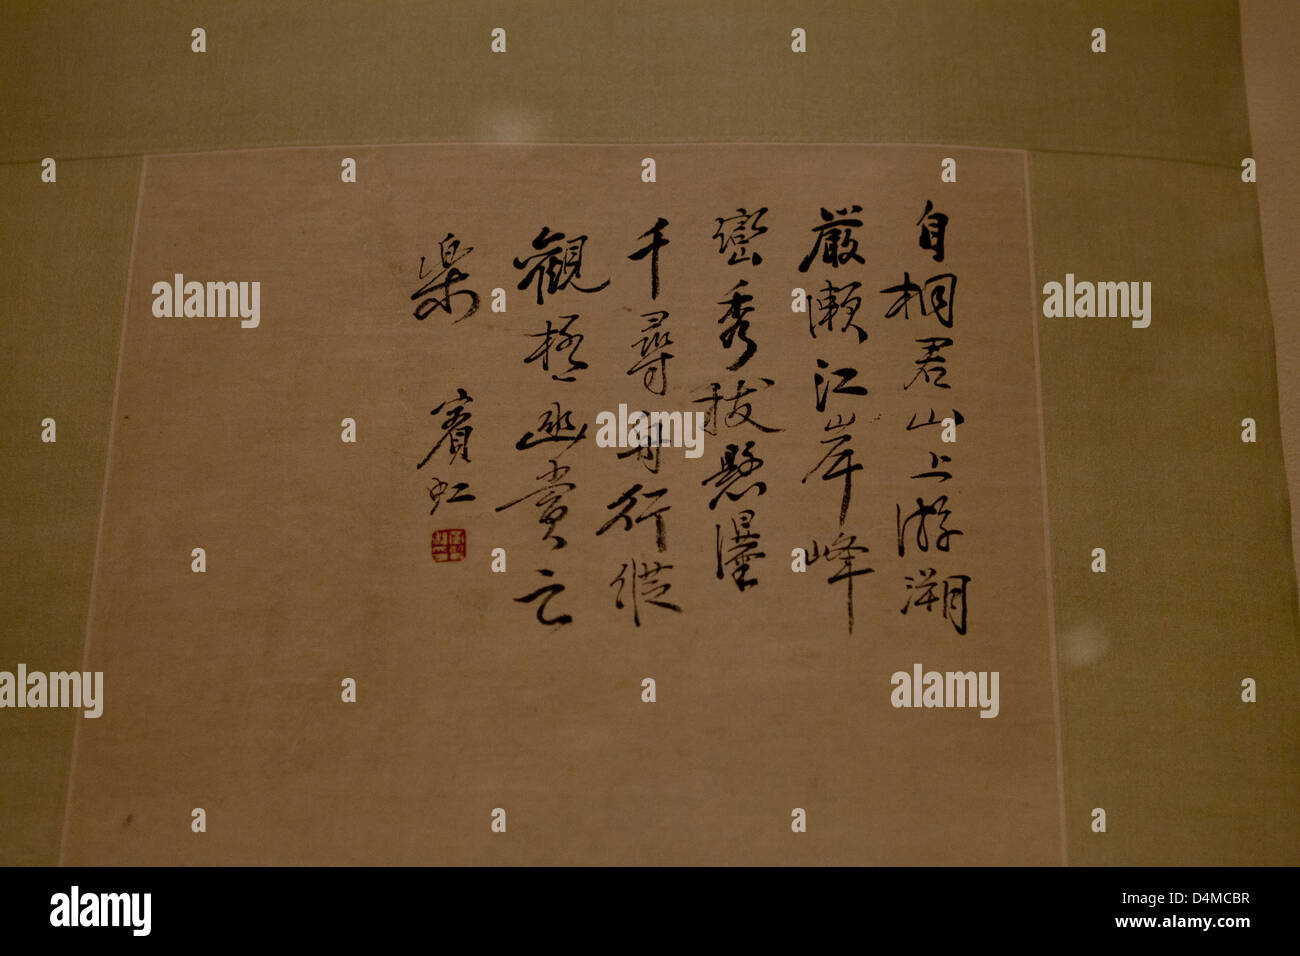 Calligraphie chinoise poème écrit en écriture cursive Banque D'Images